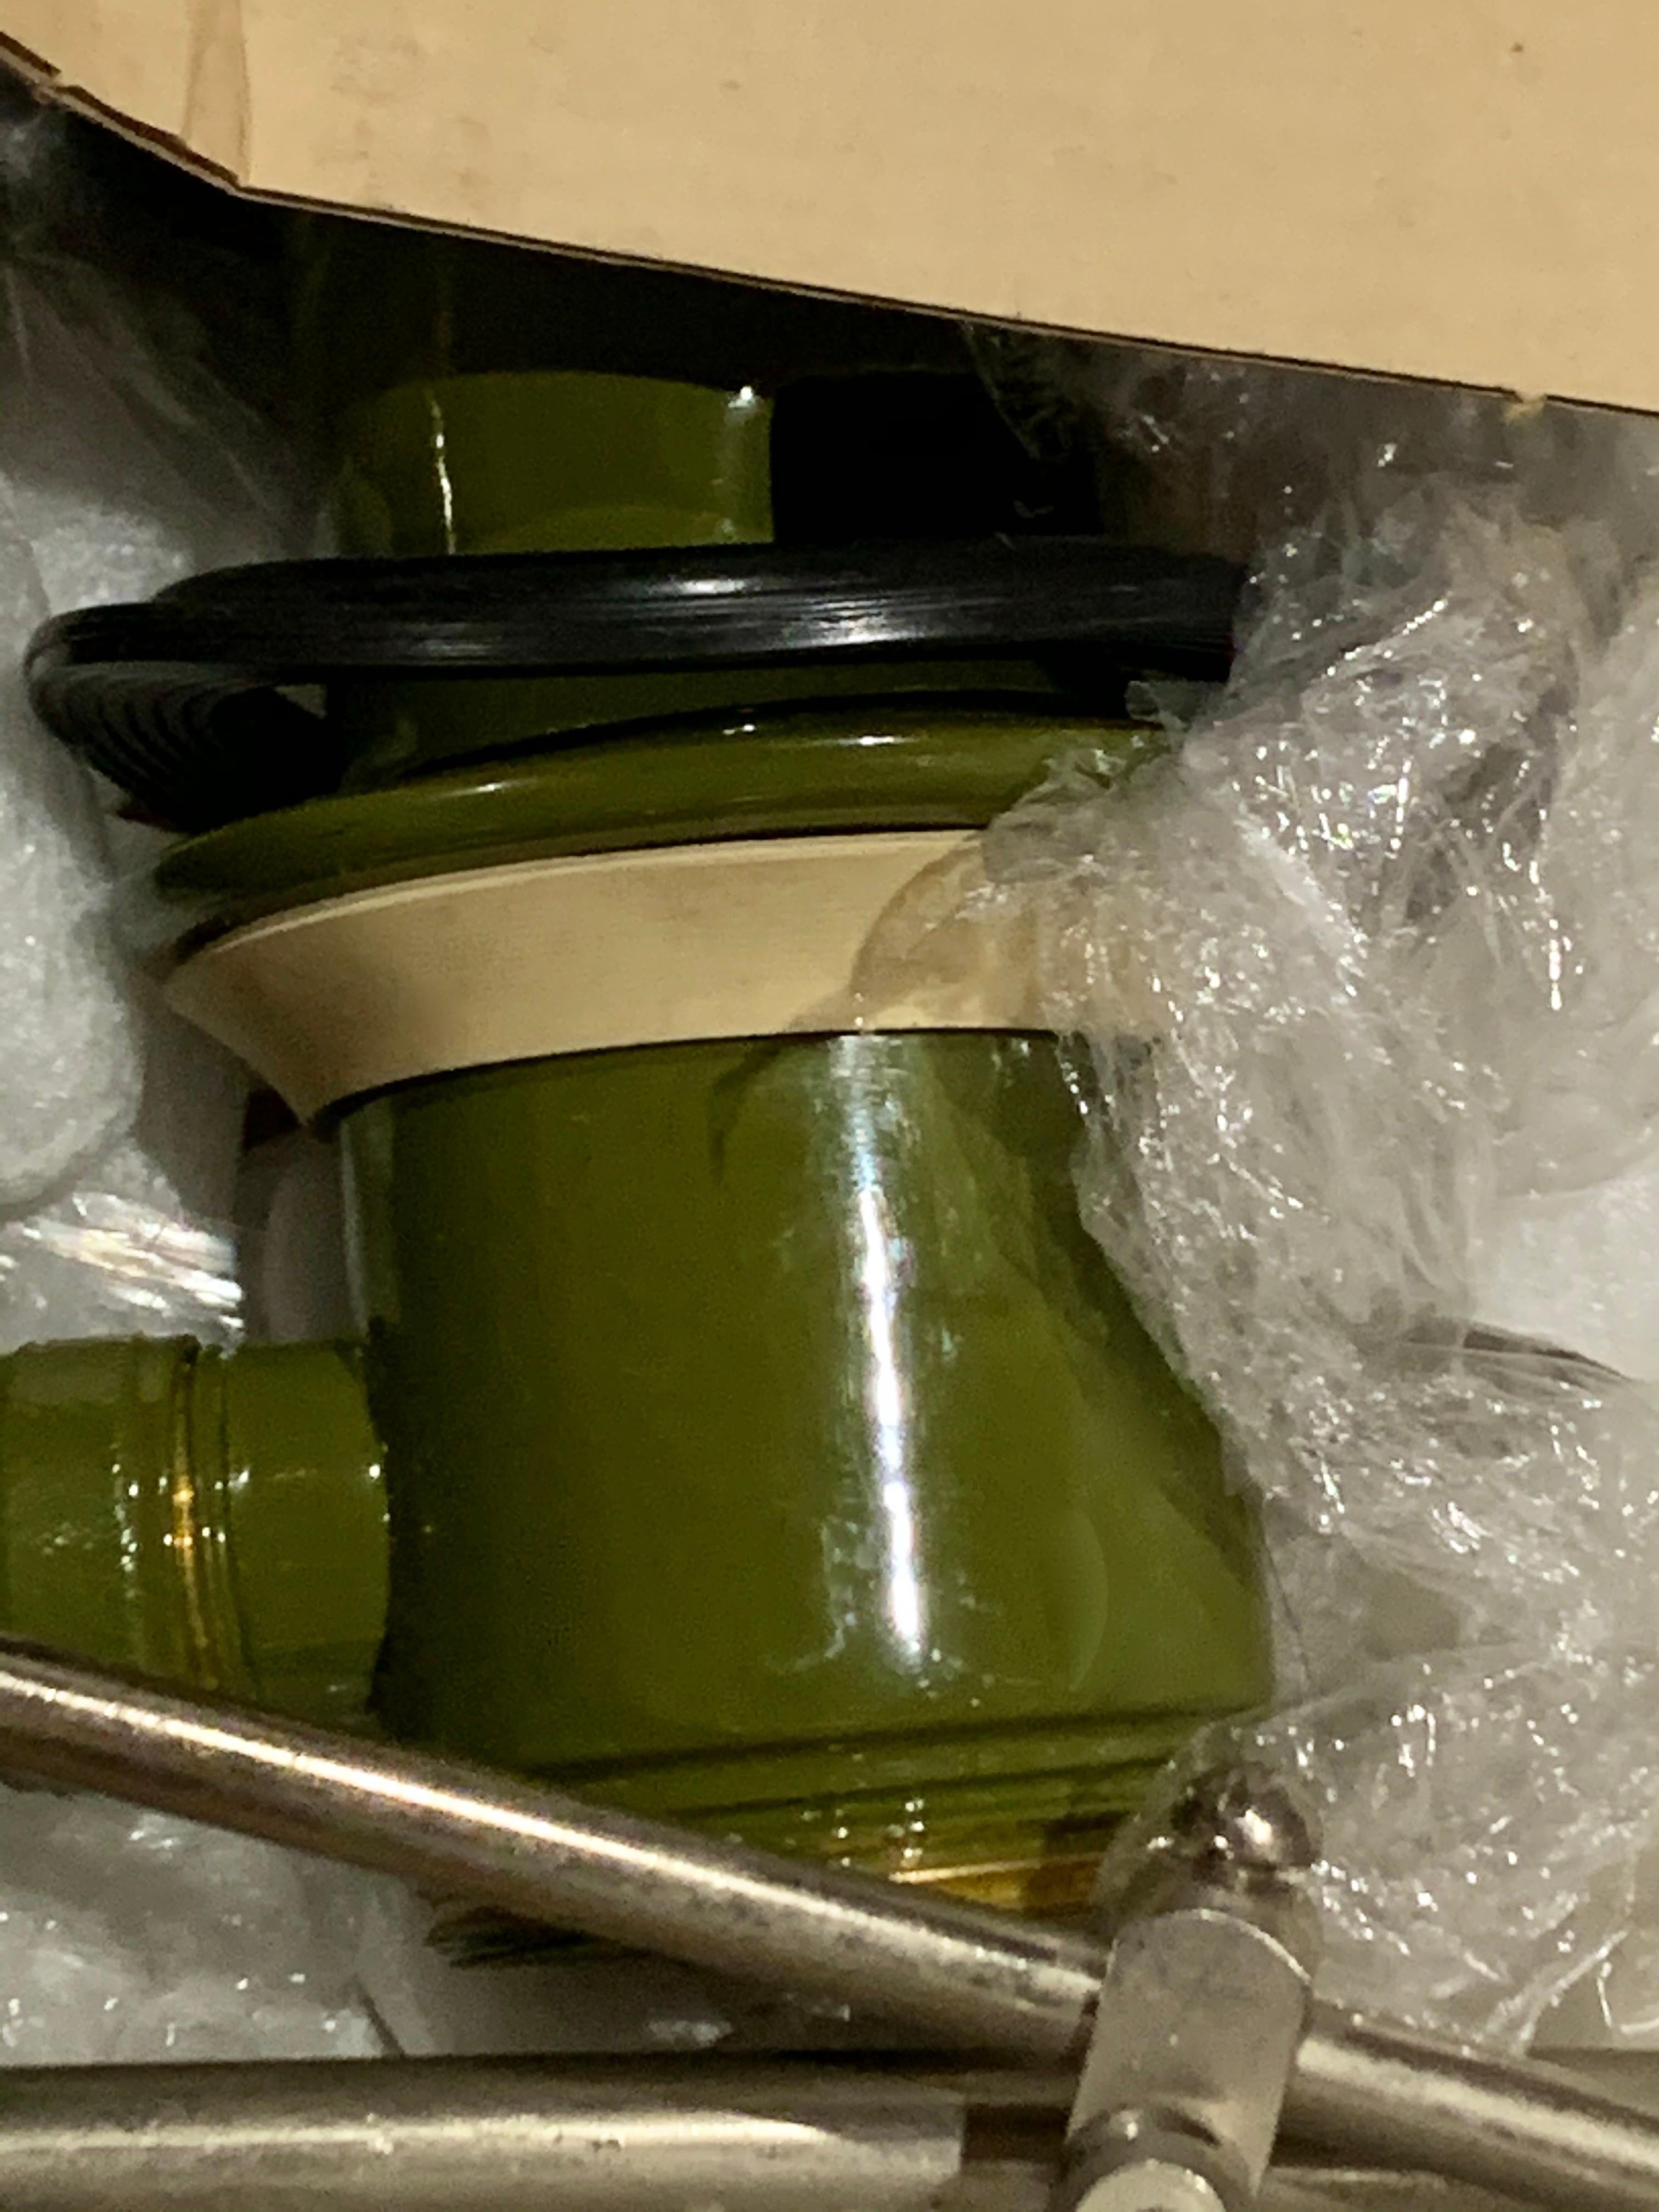 Brass Arne Jacobsen Basin & Bidet Vola Mixer Faucet Set, Moss Green, New in Box, 1960s